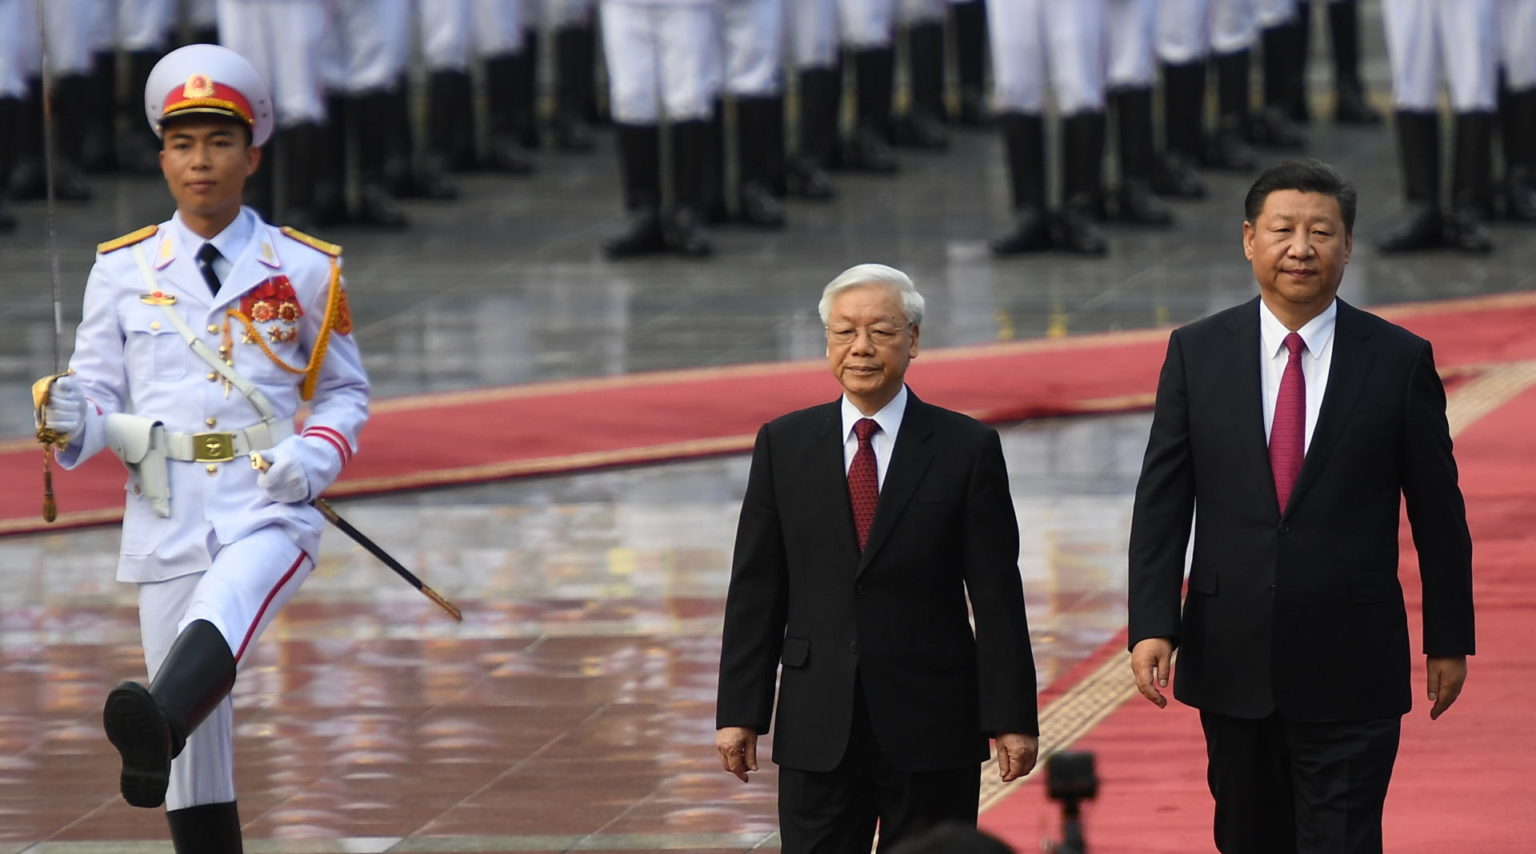 Ông Nguyễn Phú Trọng (giữa) cùng ông Tập Cận Bình (phải) bước trên thảm đỏ tại Phủ Chủ Tịch, Hà Nội, ngày 12/11/2017. Ảnh: Hoang Dinh Nam/ Pool/ AFP via Getty Images